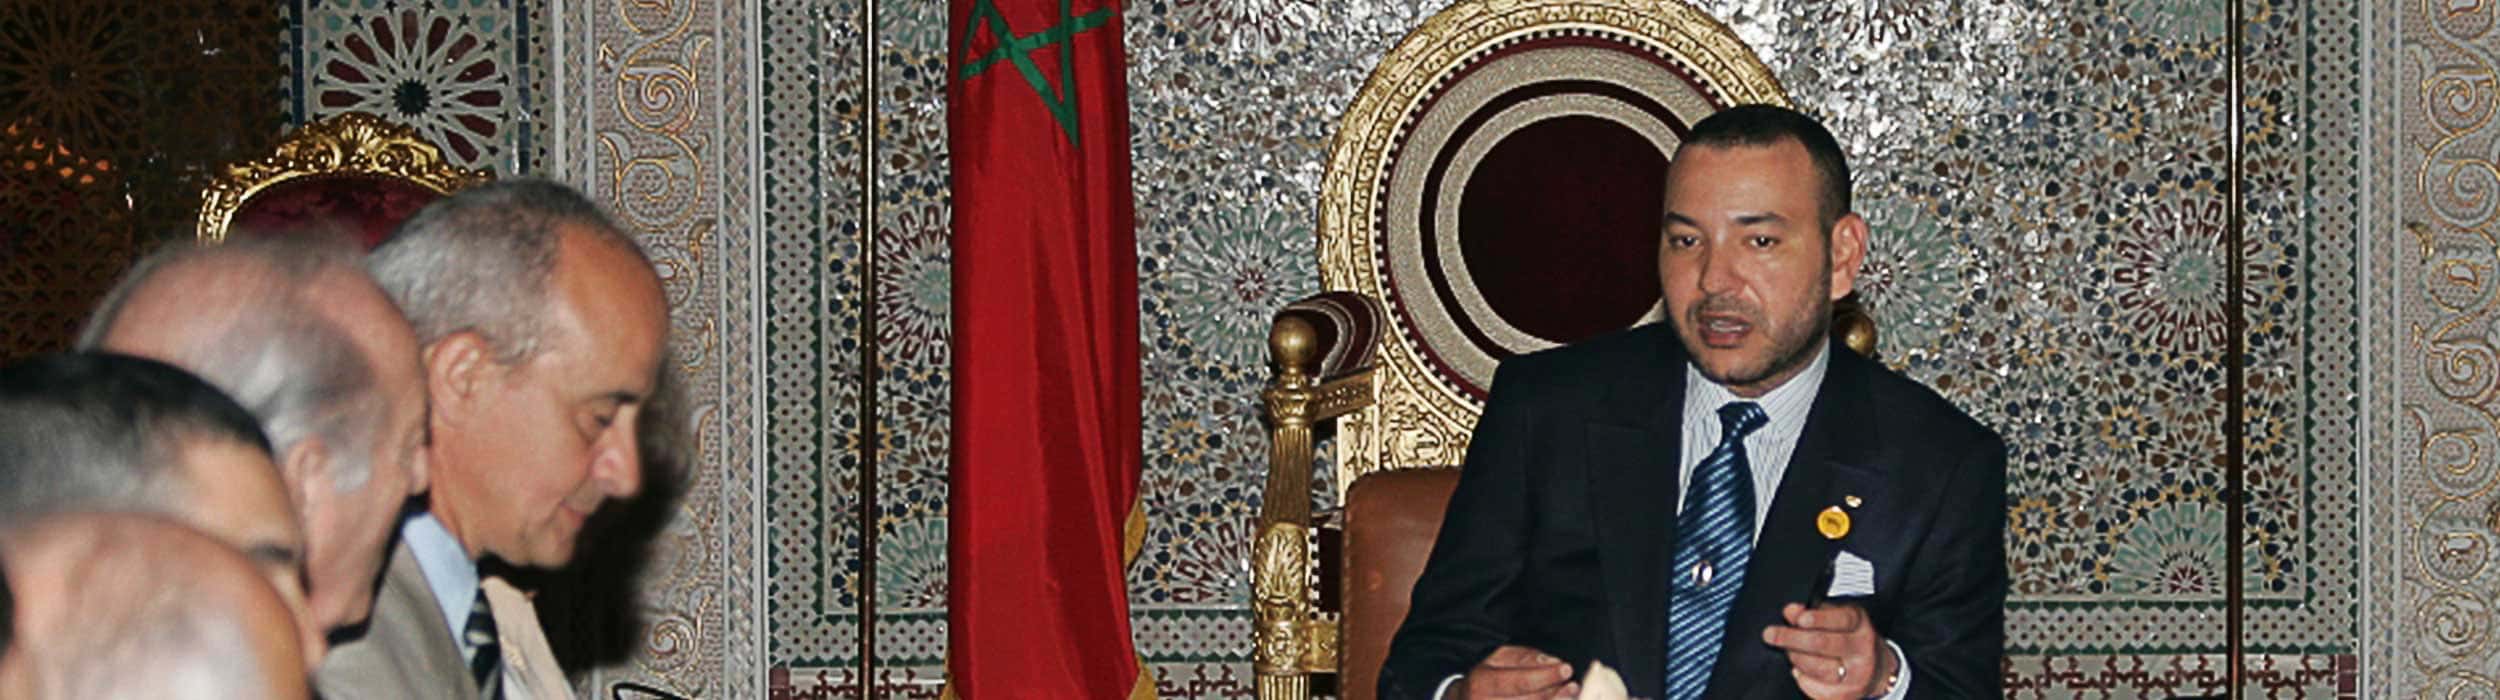 Su Majestad el Rey Mohammed VI